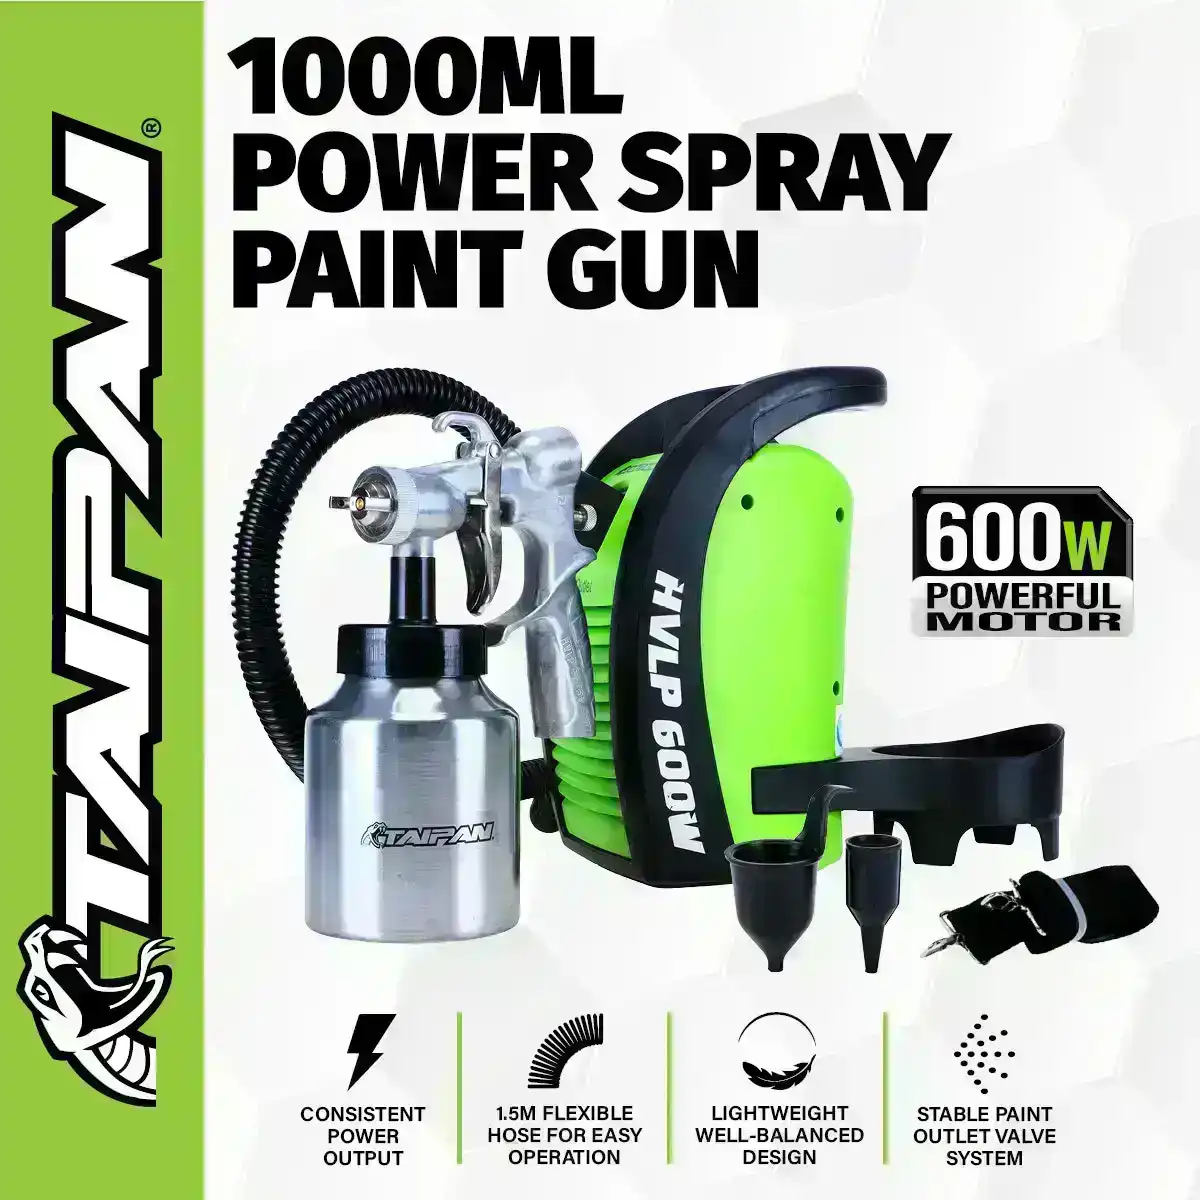 Taipan® 1000ml Paint Spray Gun Various Spray Patterns 600W Powerful Motor